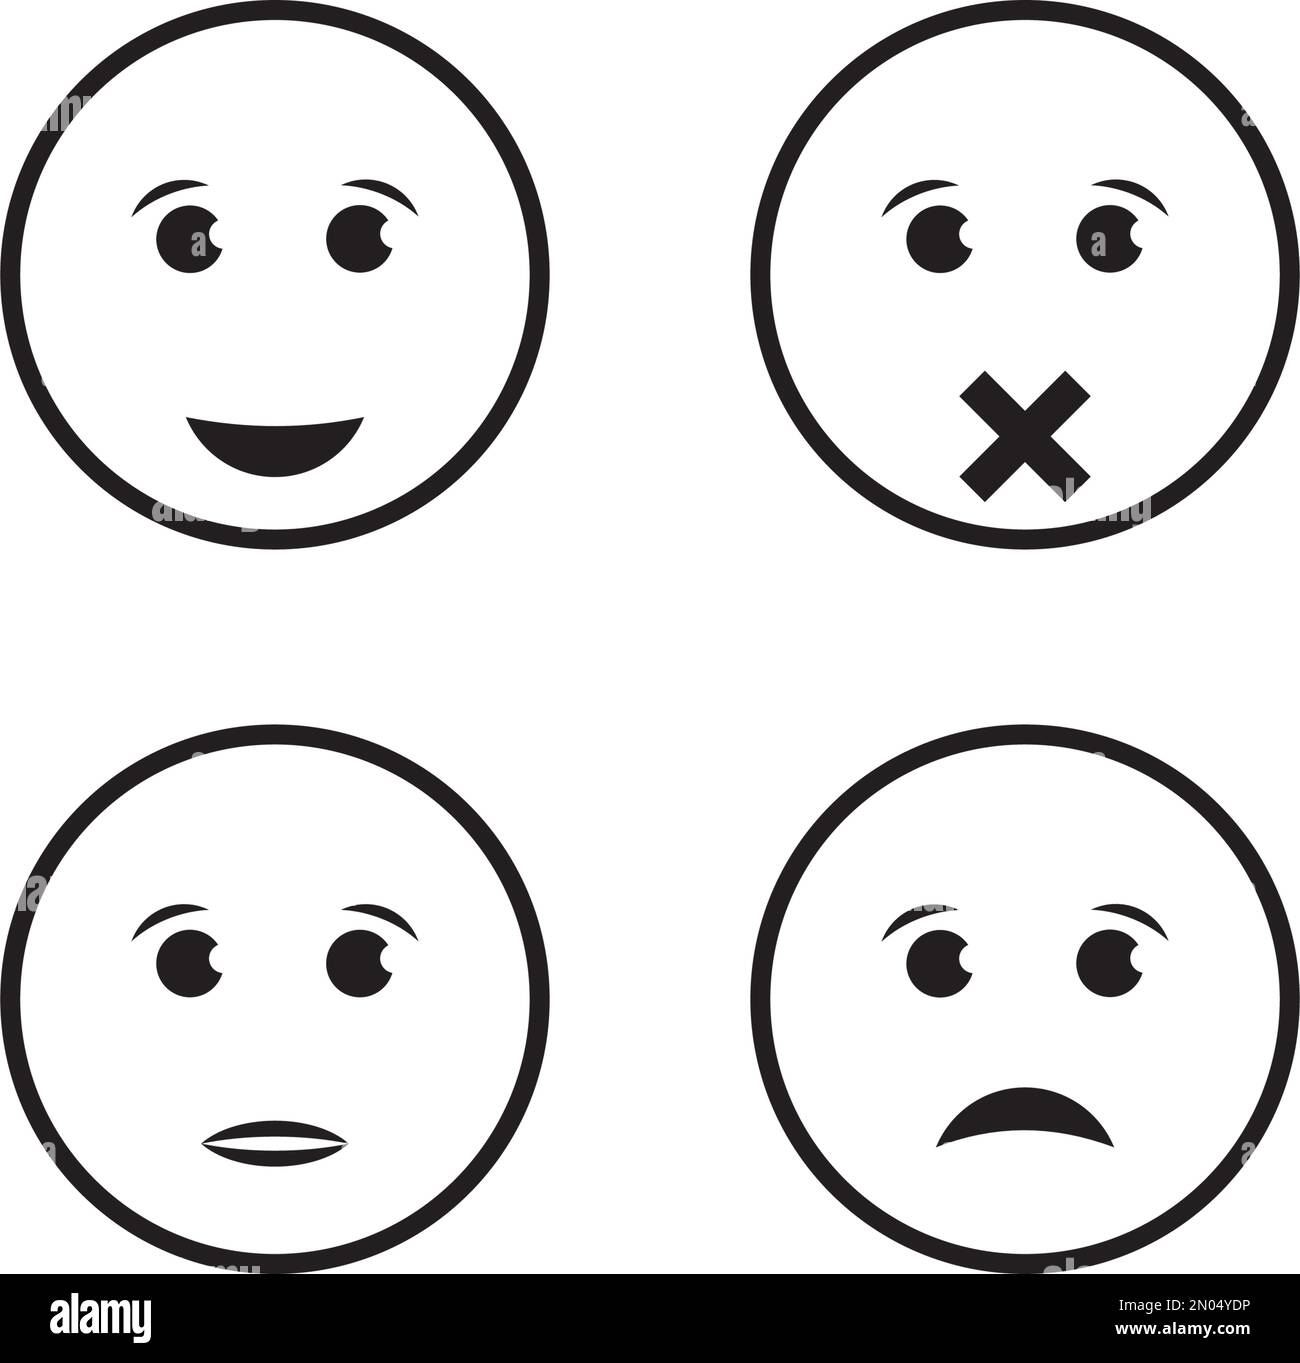 disegno e illustrazione del logo vettoriale dell'icona dell'espressione facciale Illustrazione Vettoriale